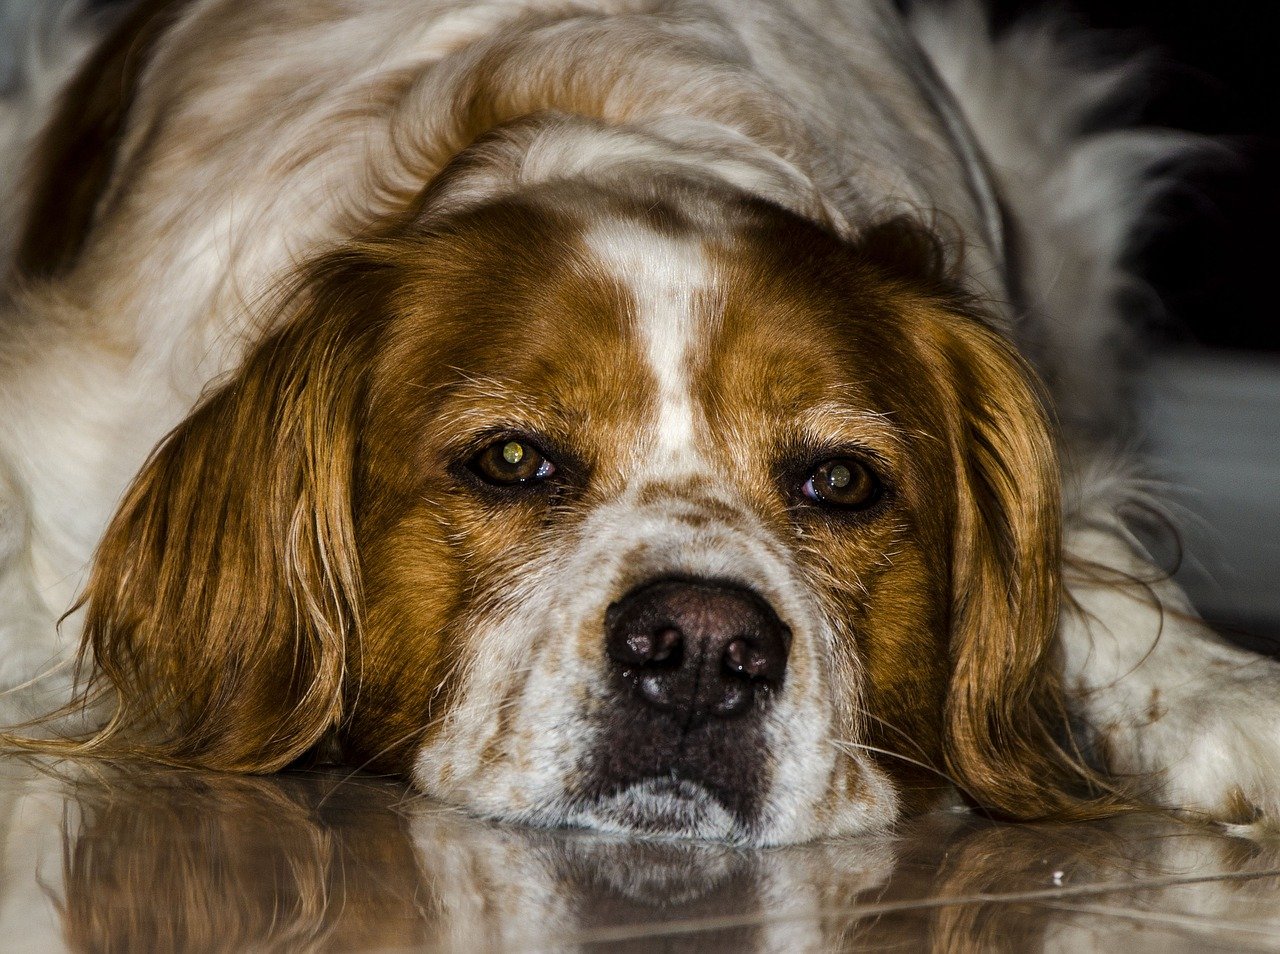 Preparándote para afrontar la muerte de tu mascota: consejos prácticos y emocionales